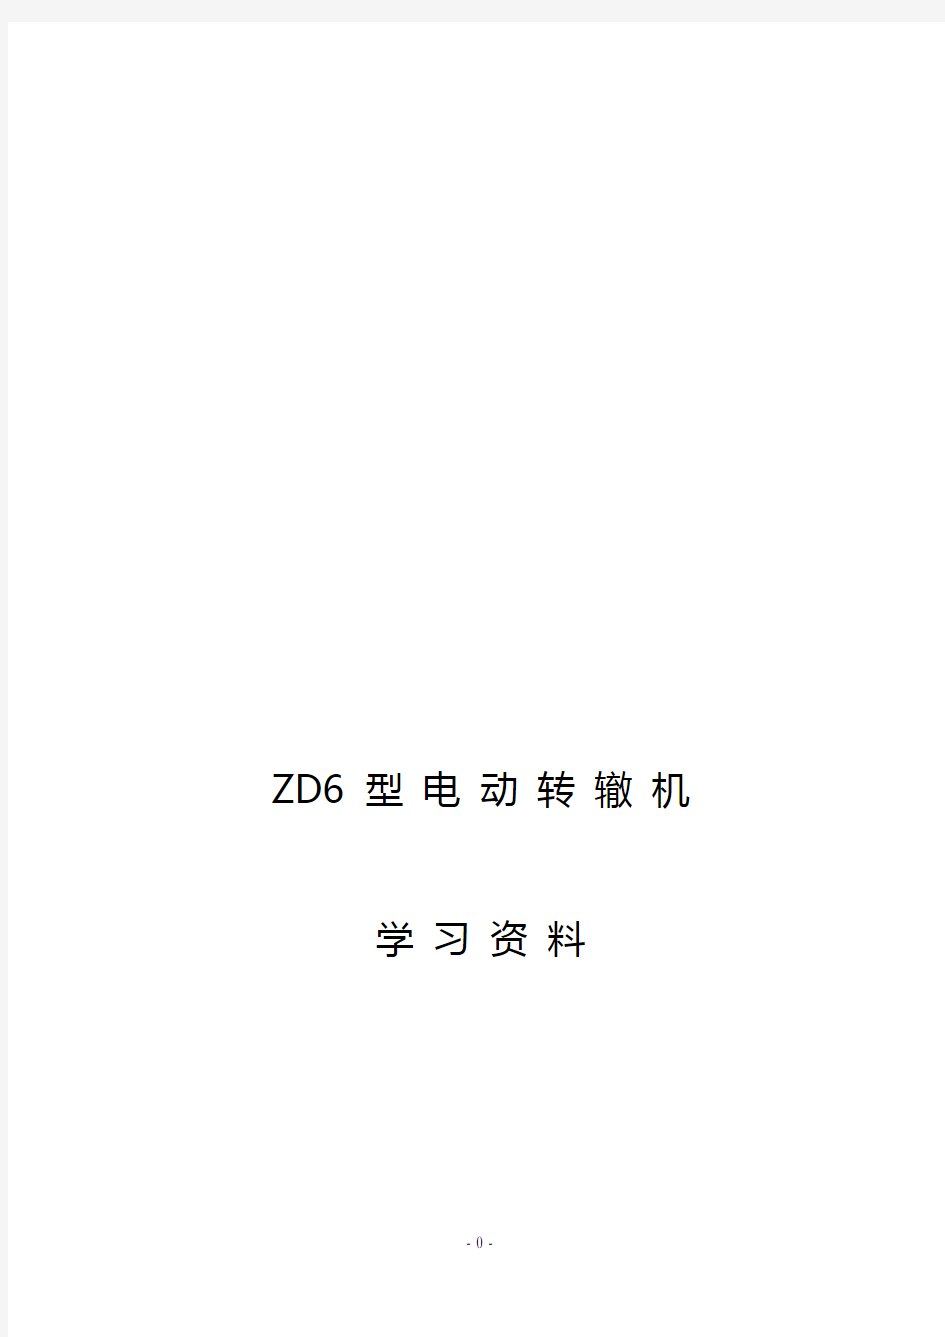 ZD6 型 电 动 转 辙 机